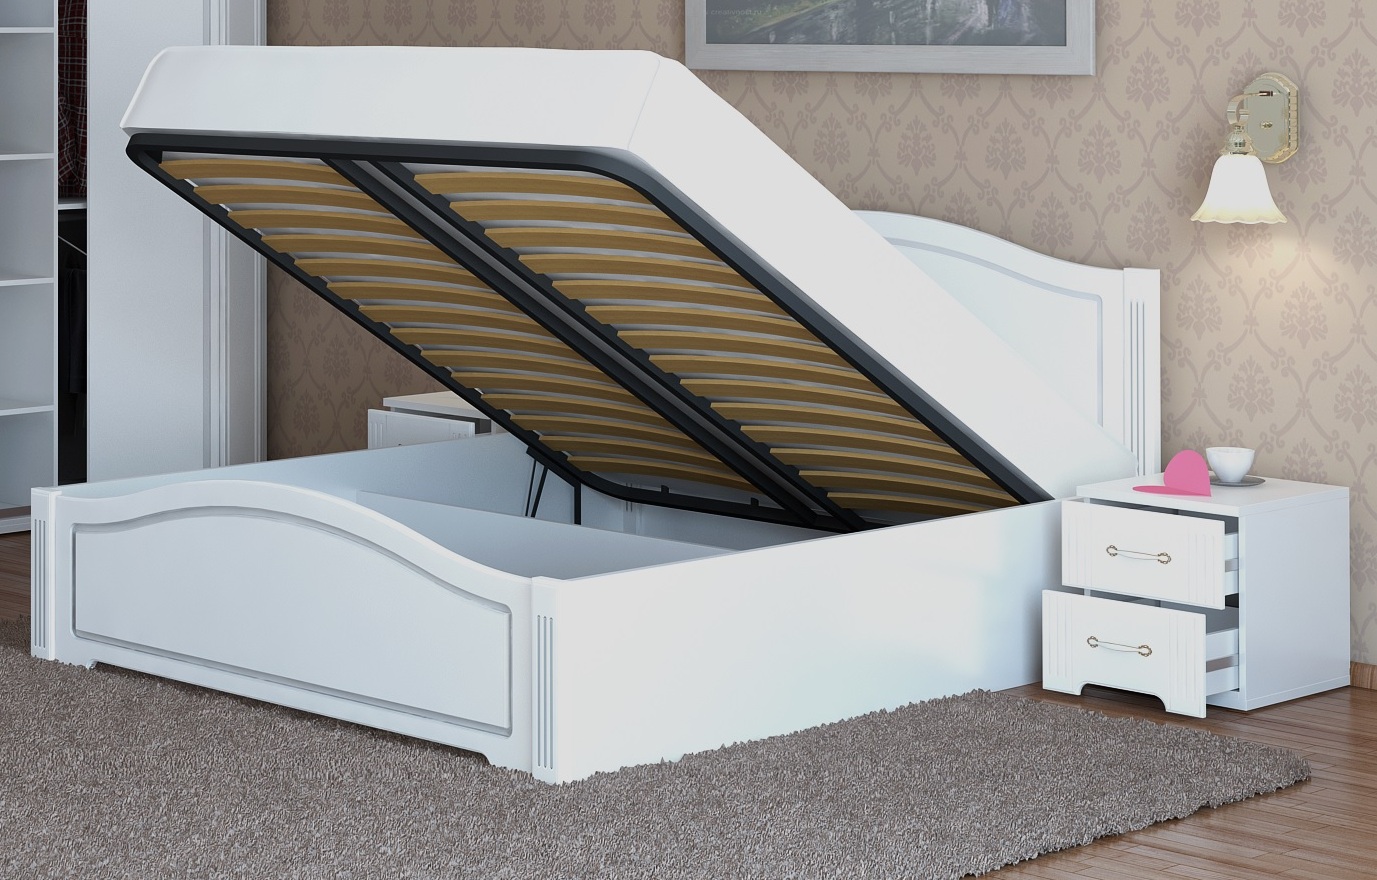 Двуспальные кровати со спальным местом размером 160х200 см